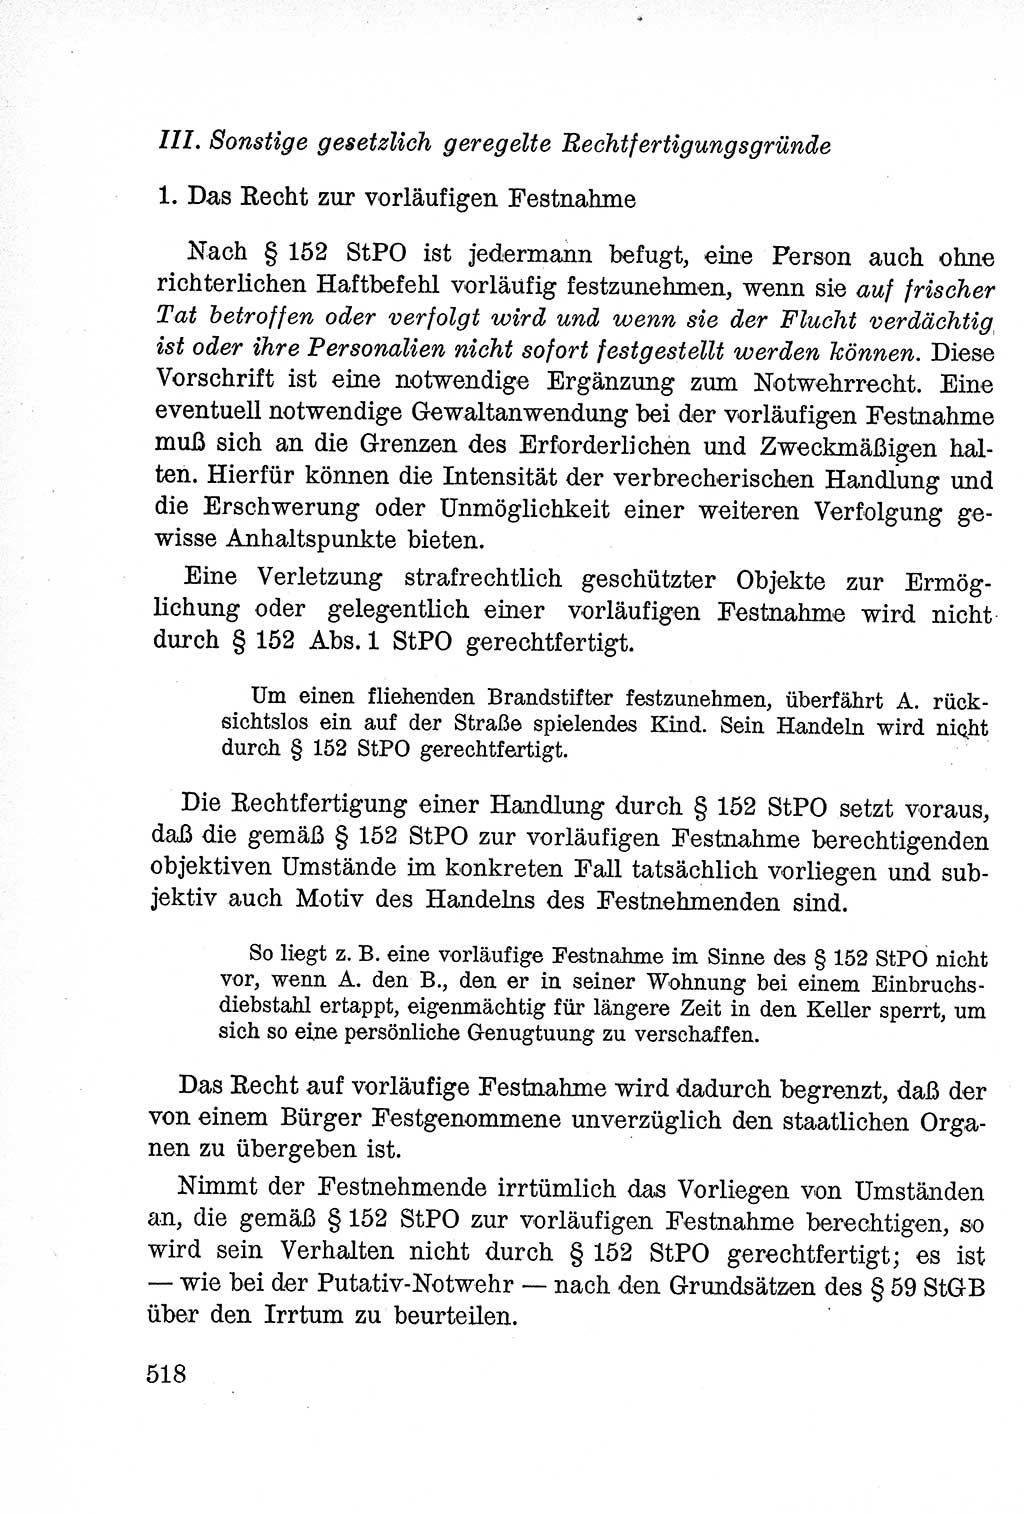 Lehrbuch des Strafrechts der Deutschen Demokratischen Republik (DDR), Allgemeiner Teil 1957, Seite 518 (Lb. Strafr. DDR AT 1957, S. 518)